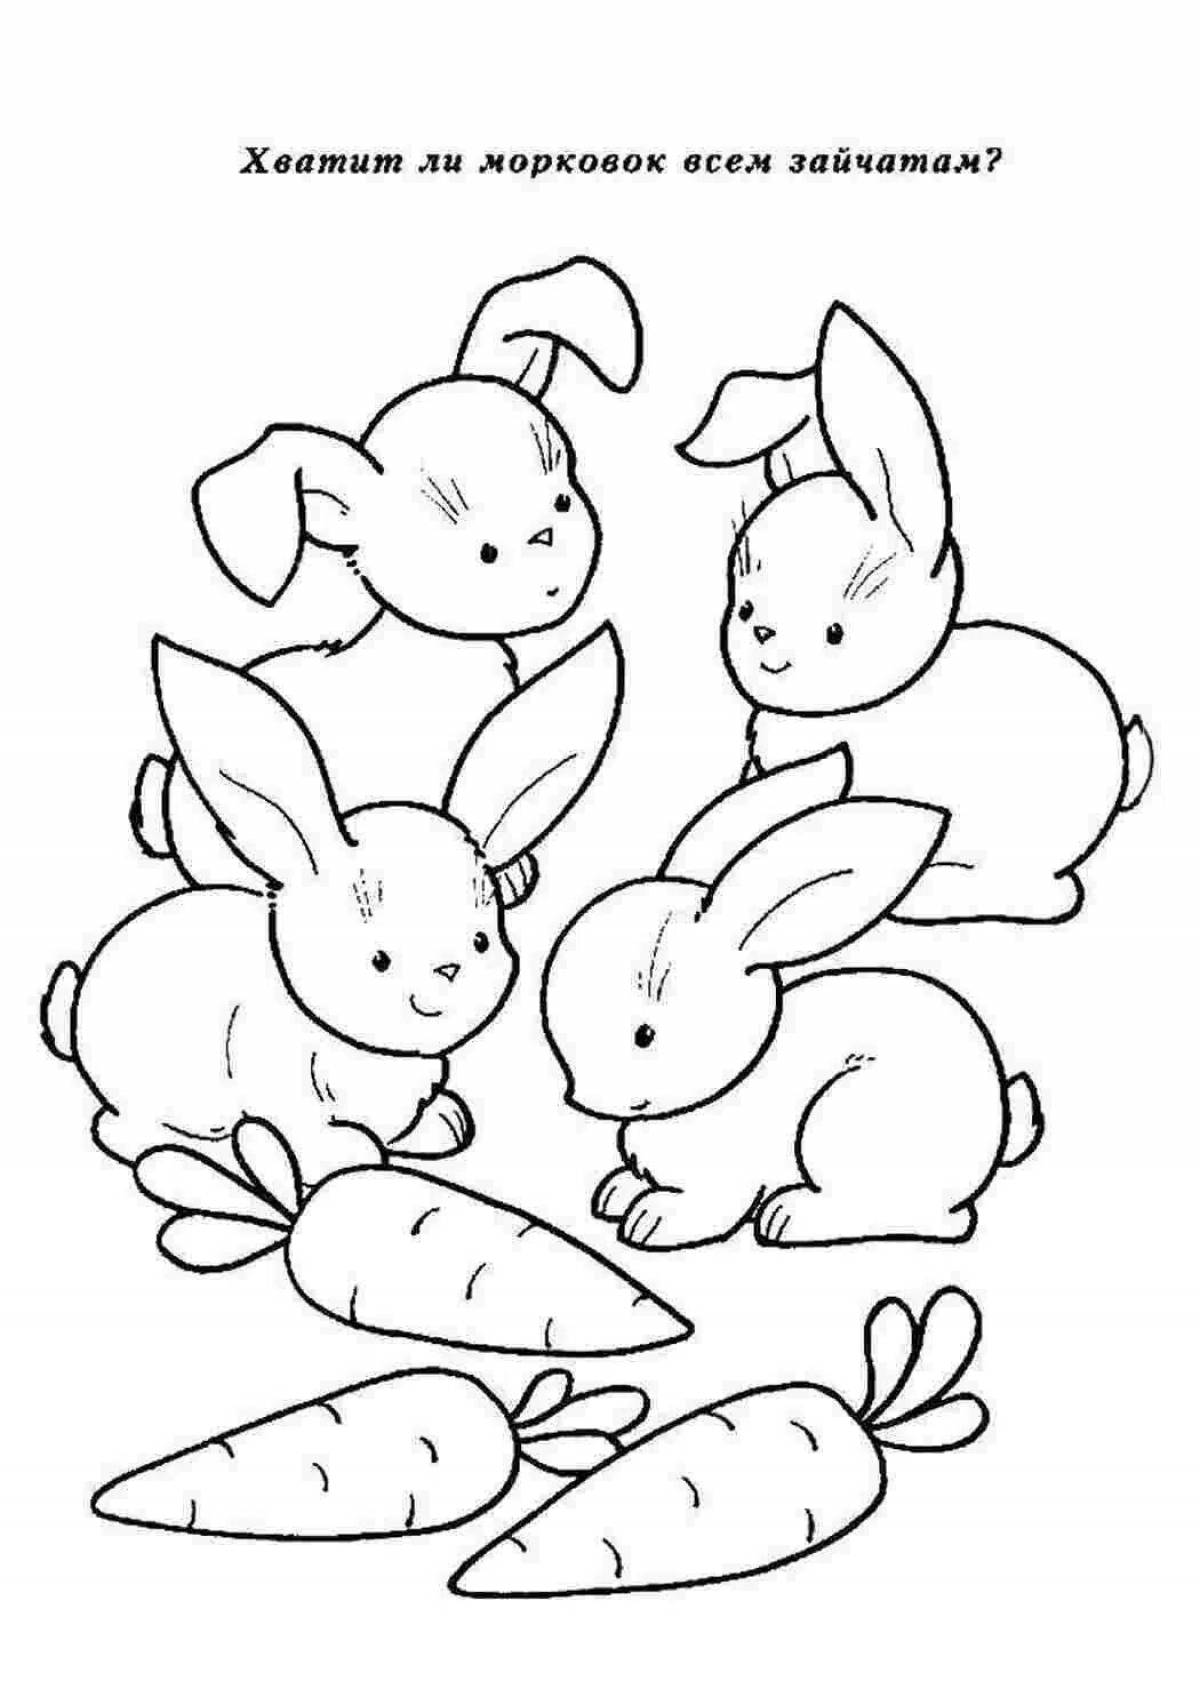 Увлекательная раскраска зайца для детей 2-3 лет